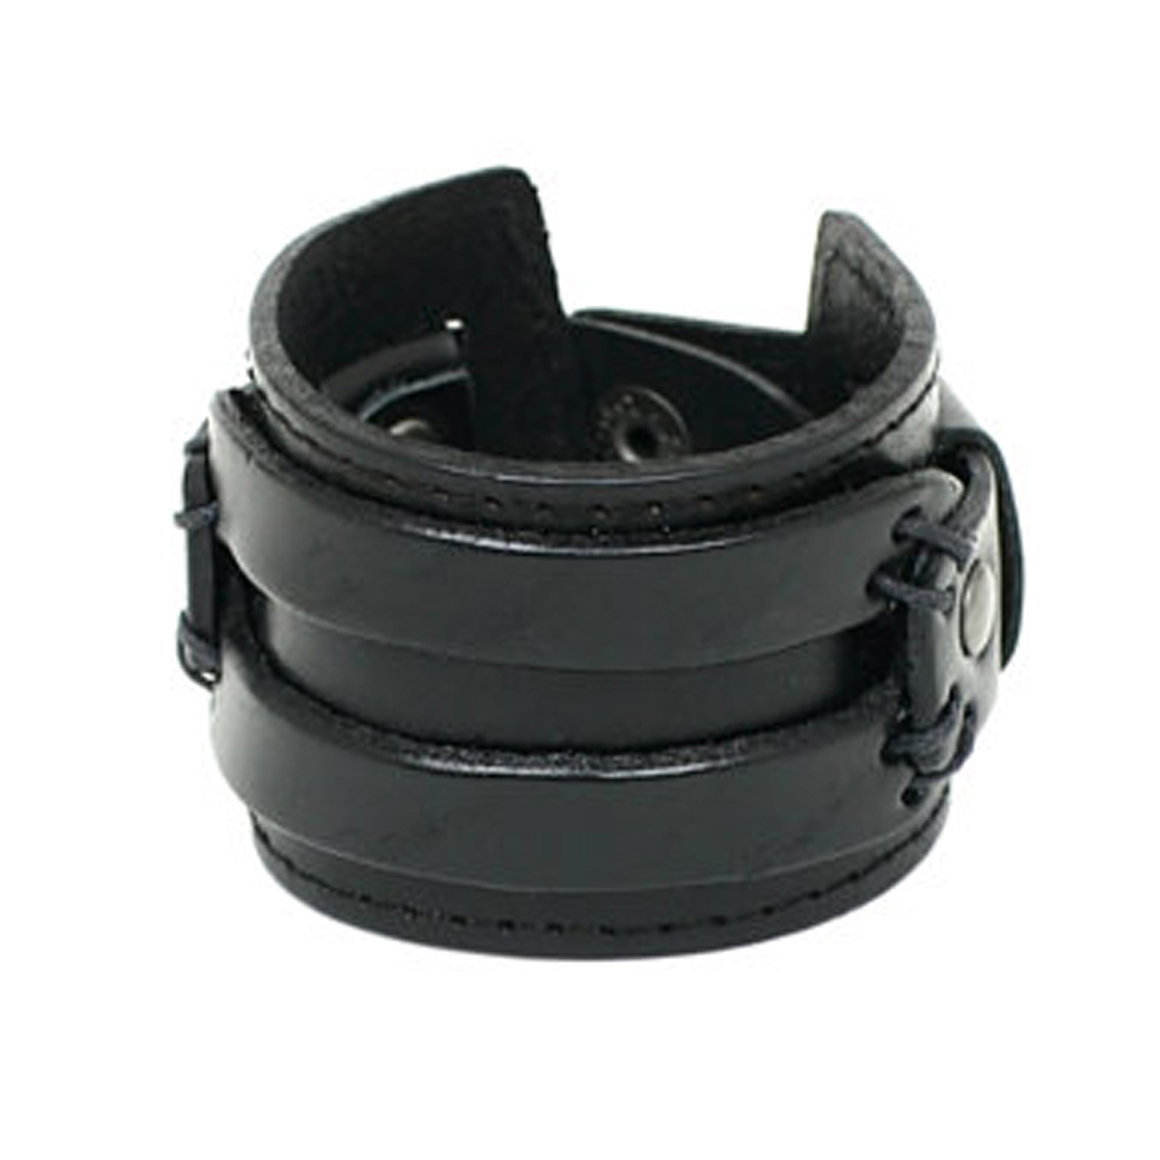 Wide Leather Wrist Cuff Bracelet Black Wide Leather Cuff - Etsy | Leather  wrist cuff, Unique leather bracelet, Leather bracelet